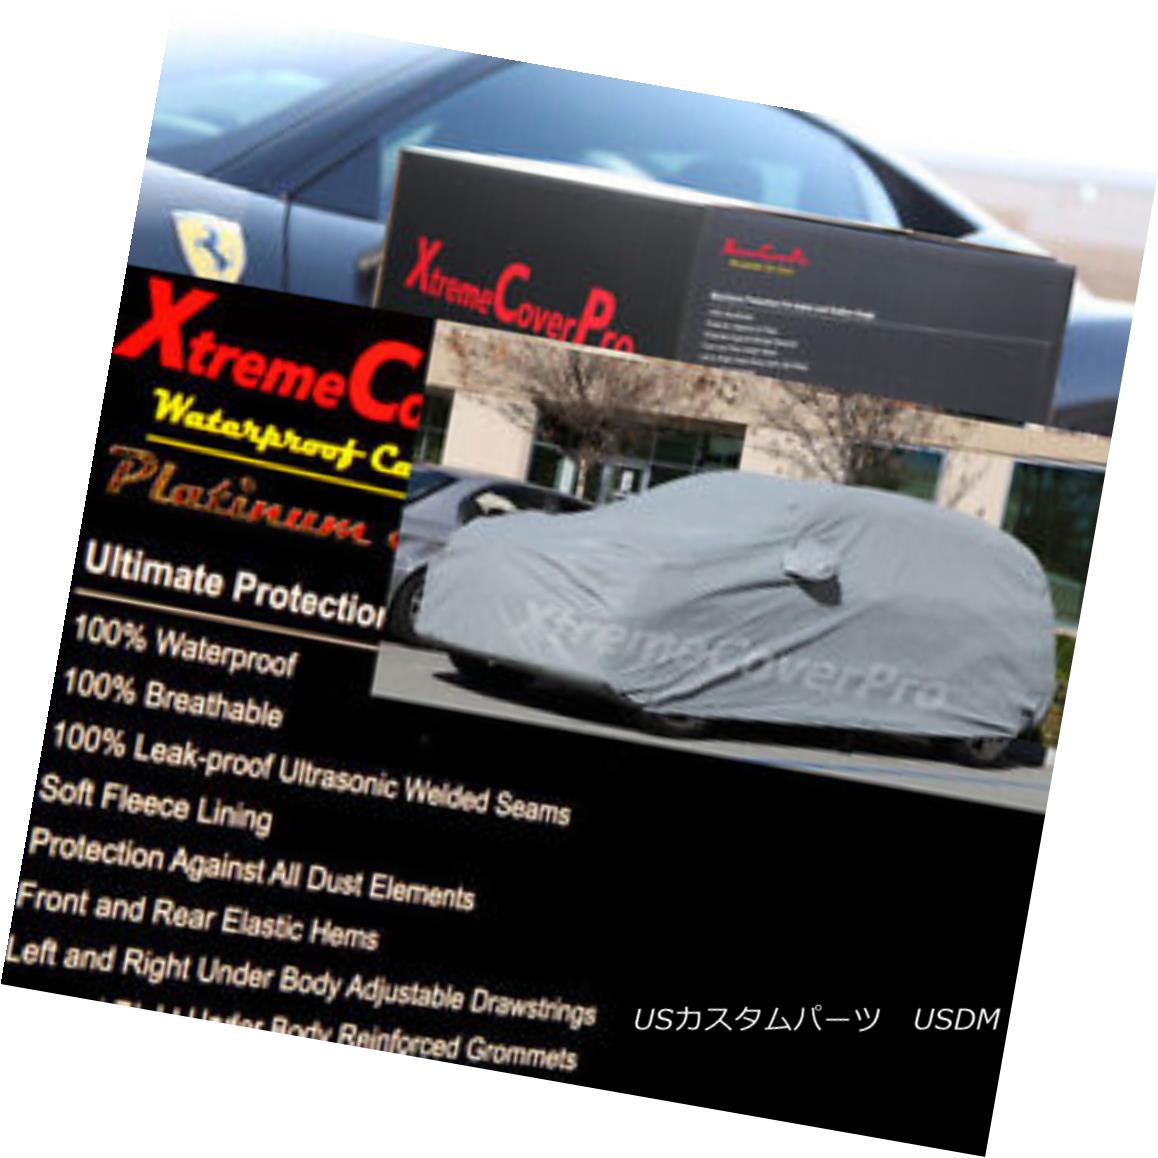 カーカバー 2015 MAZDA CX-5 Waterproof Car Cover w/Mirror Pockets - Gray 2015 MAZDA CX-5ミラーポケット付き防水カーカバー - グレー